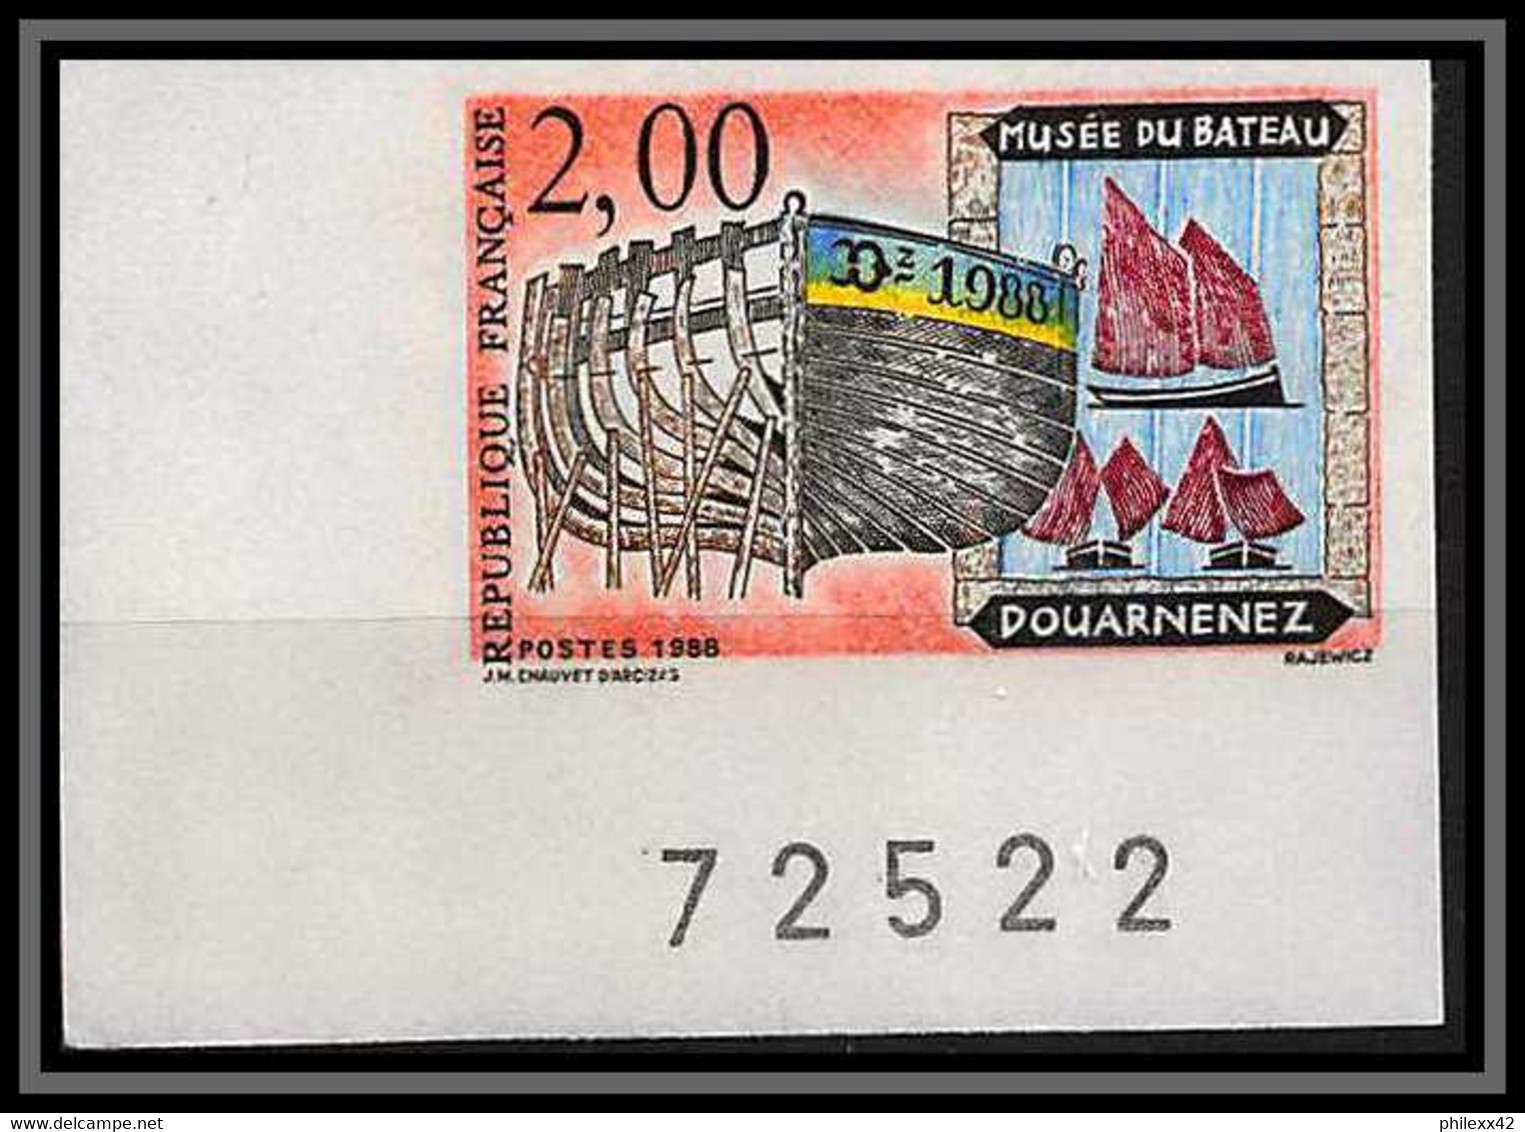 France N°2545 Musee Du Bateau Douarnenez Non Dentelé ** MNH (Imperforate) Coin De Feuille - Unclassified